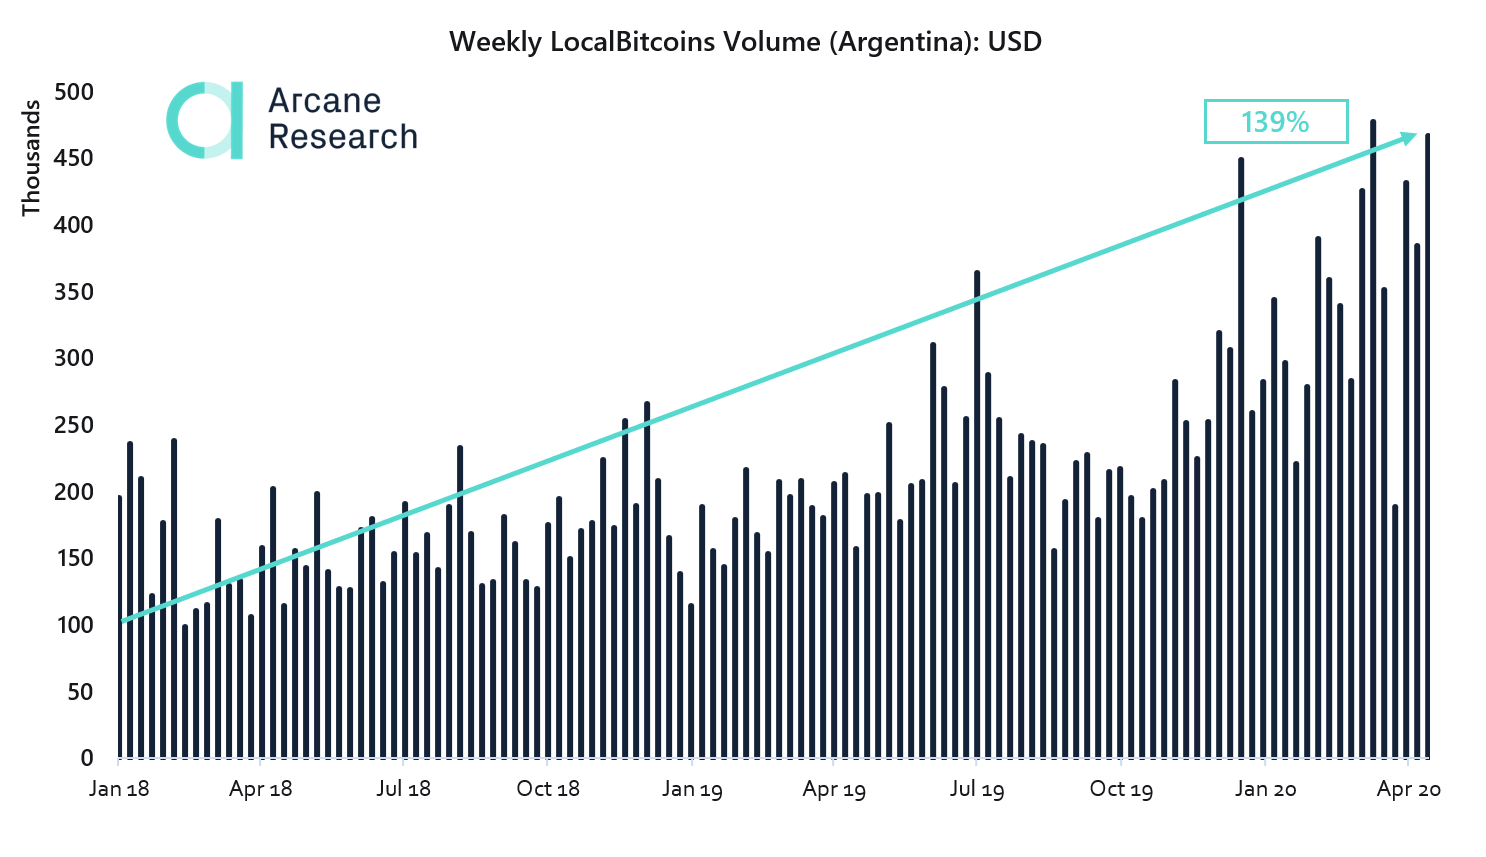 Volume semanal de bitcoins em USD na Argentina